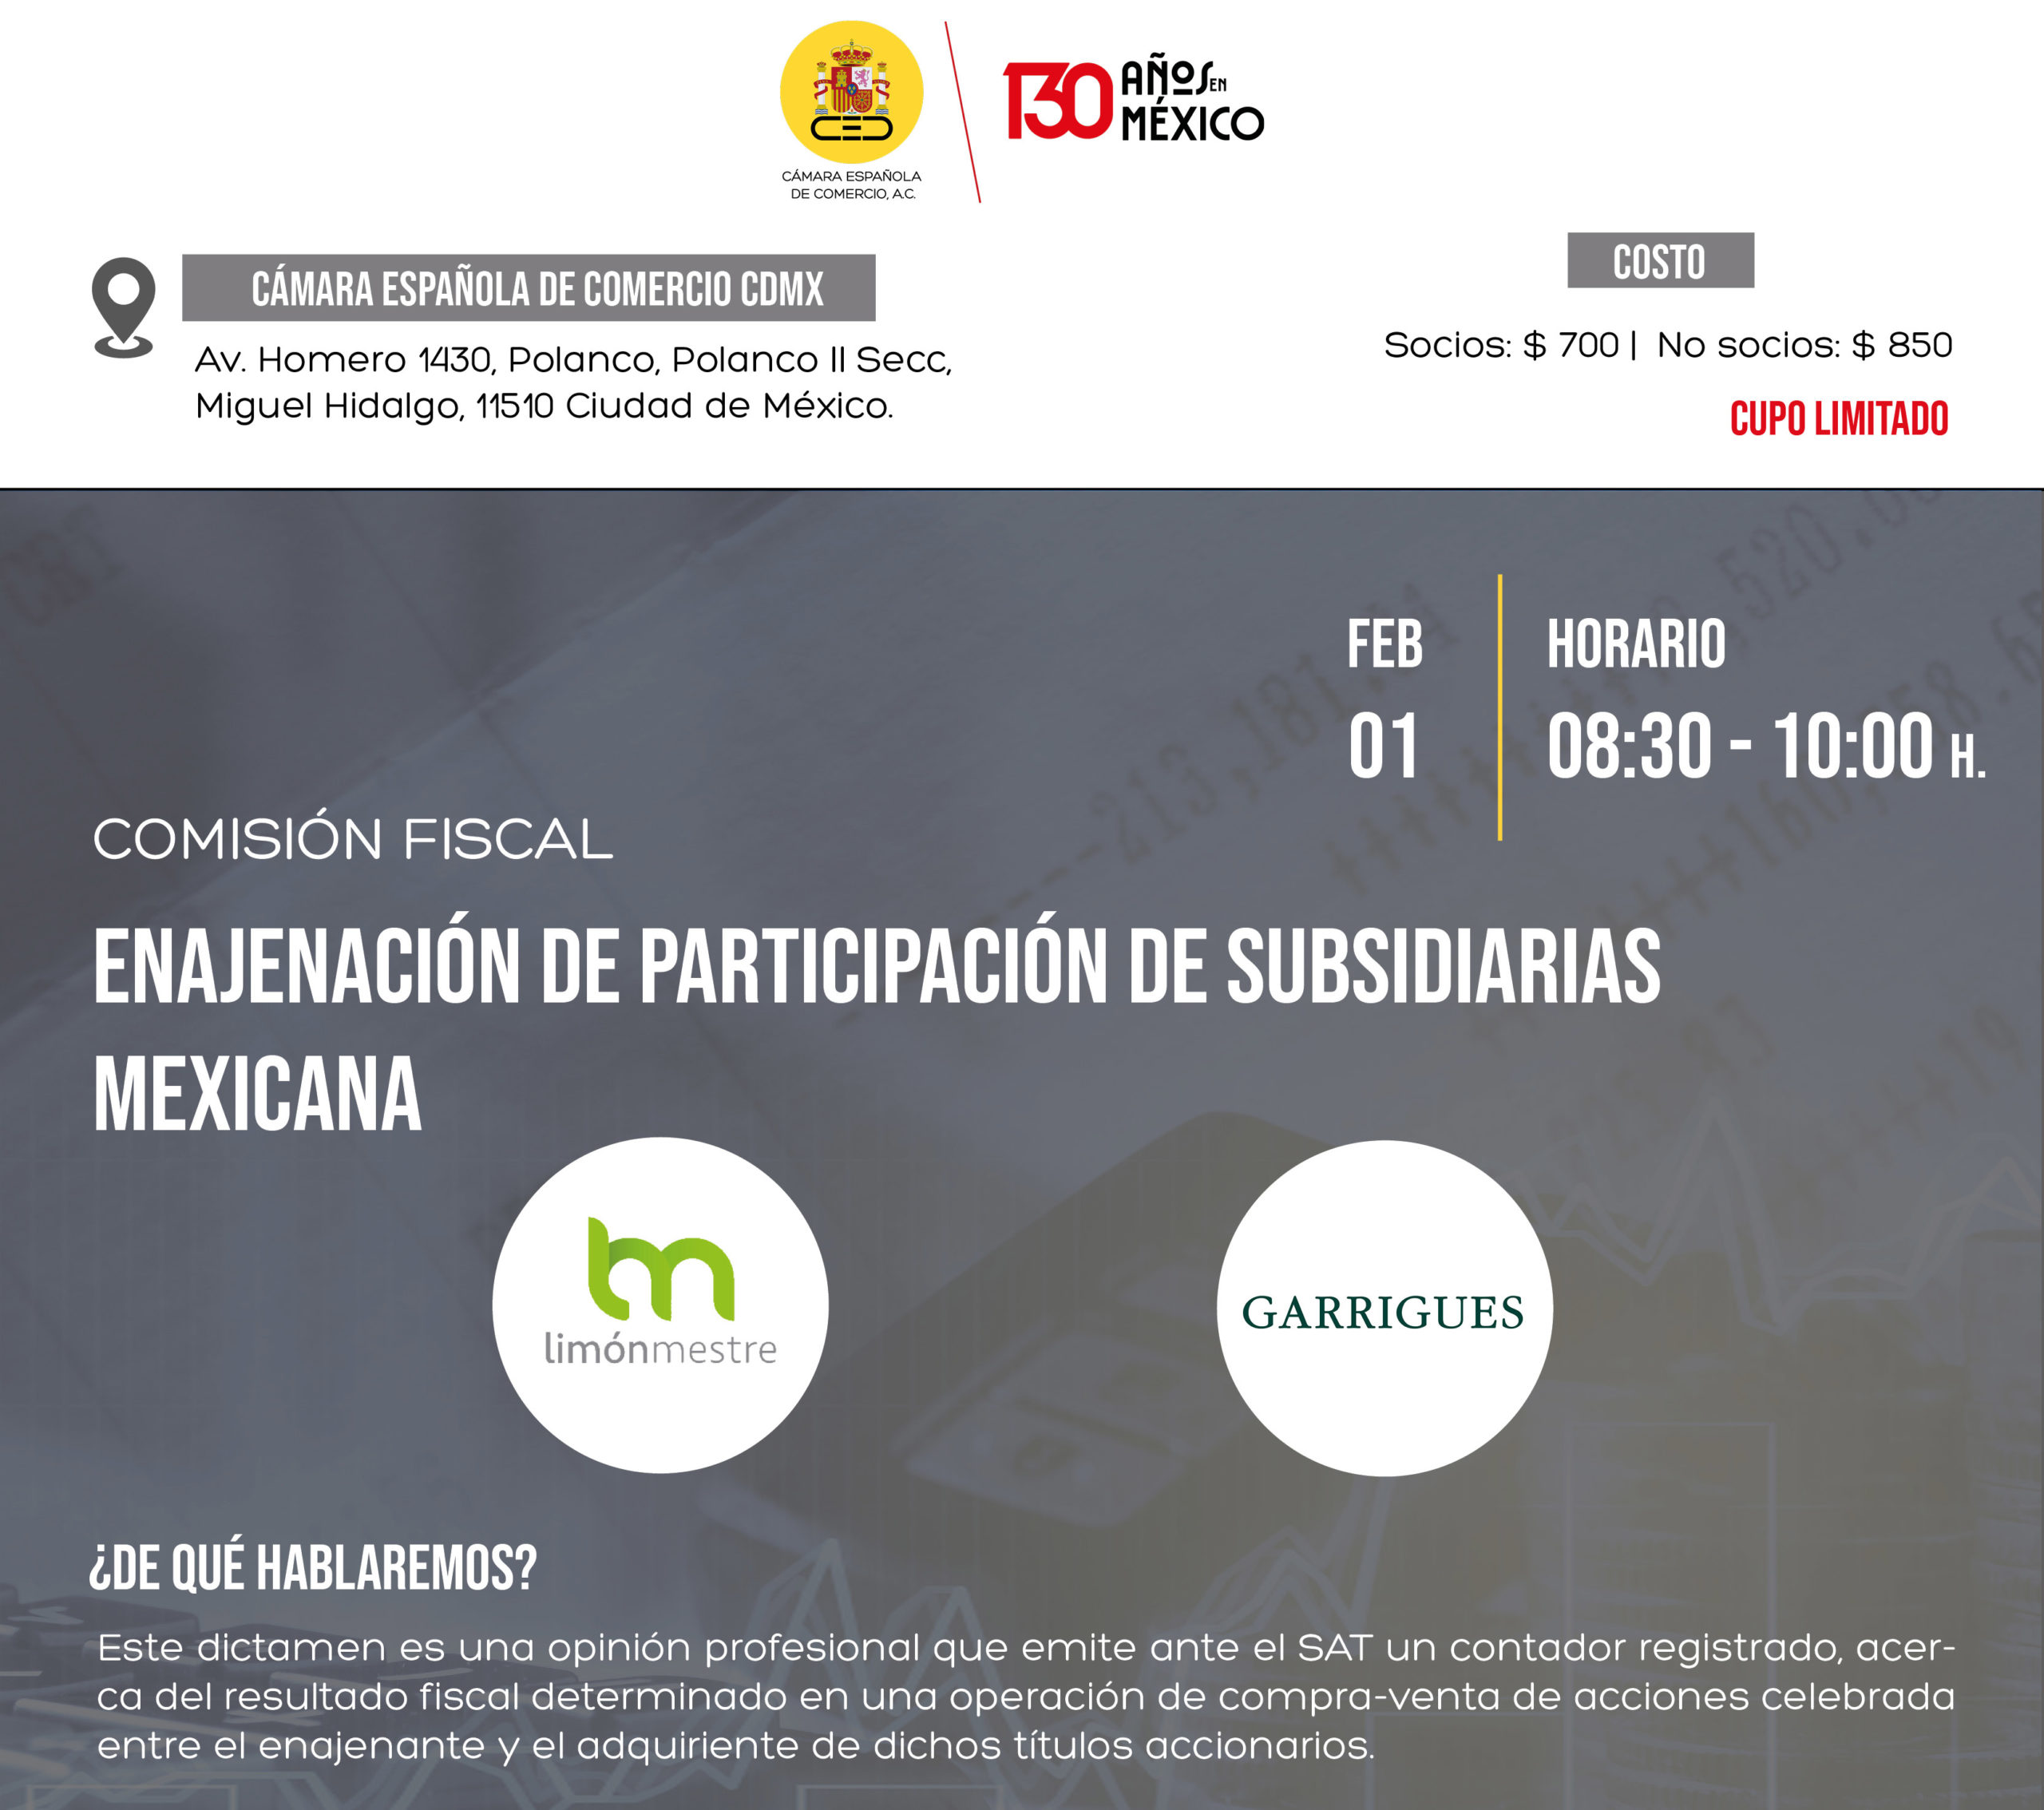 EVENTO PRESENCIAL | COMISIÓN FISCAL: ENAJENACIÓN DE PARTICIPACIÓN DE SUBSIDIARIAS MEXICANA